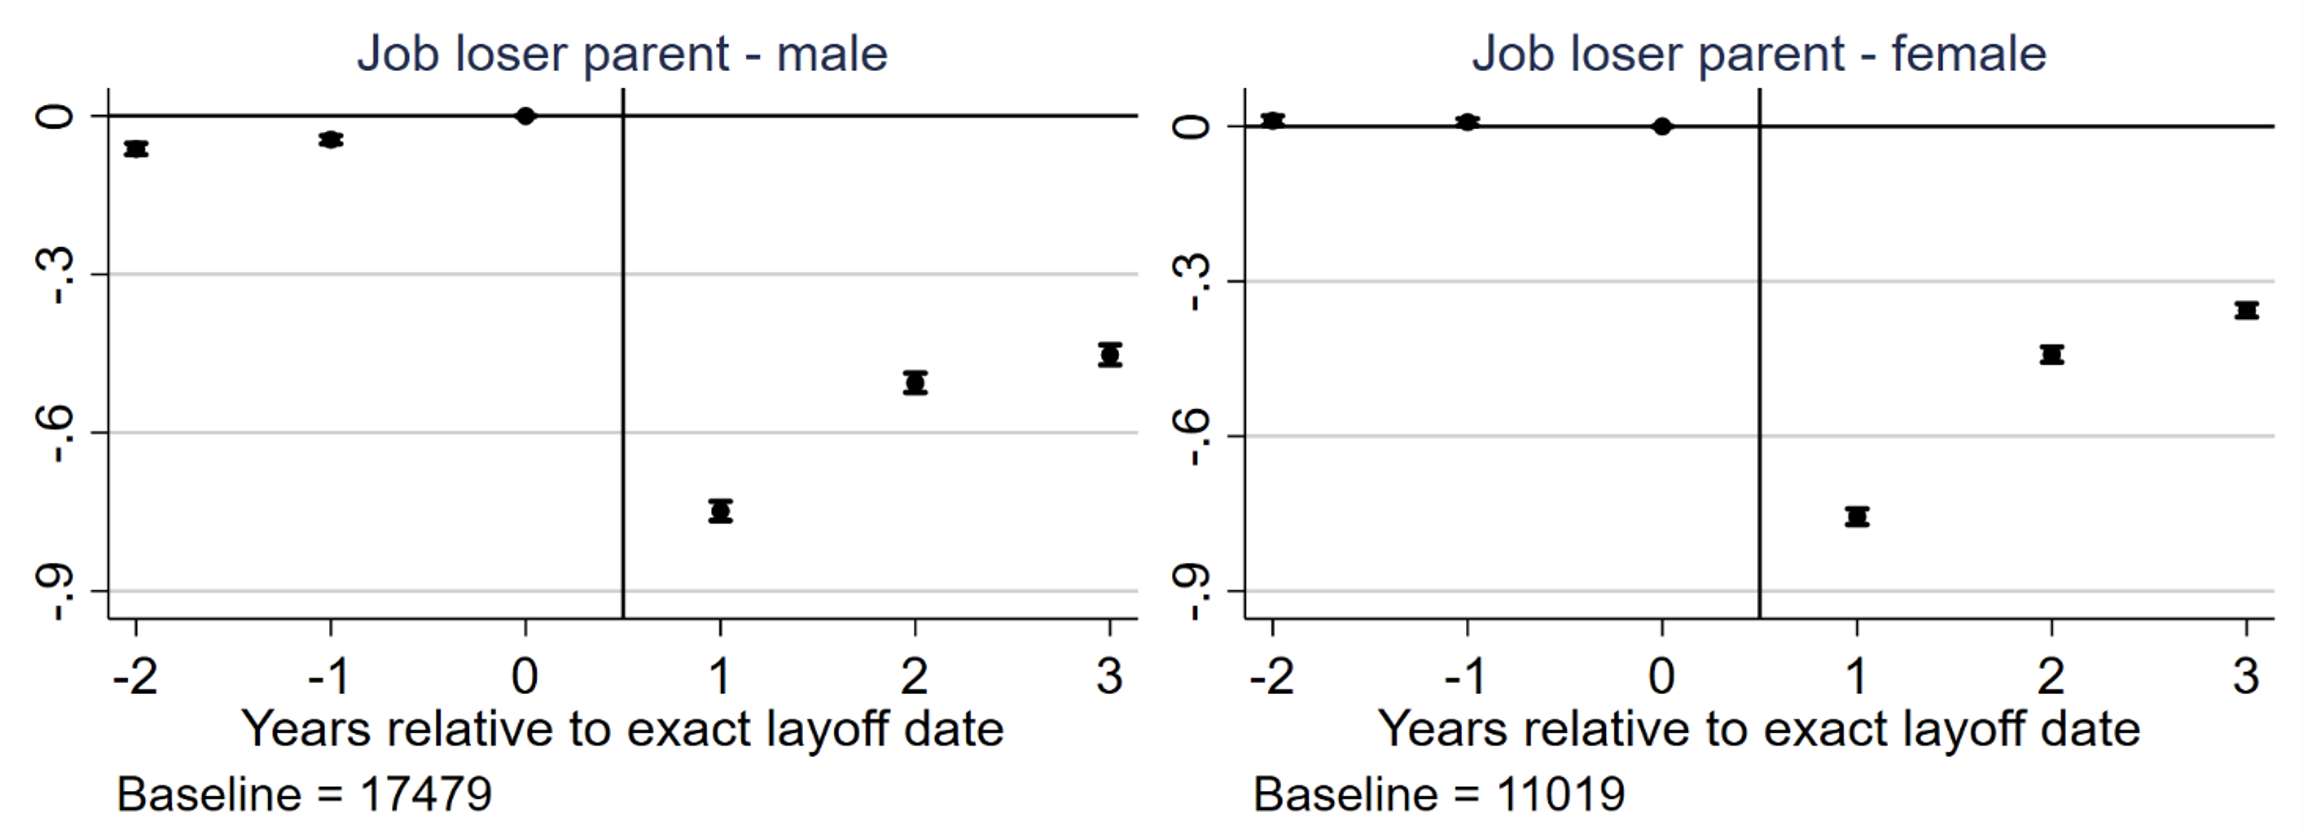 图1为父亲和母亲失业对劳动收入的影响,效果相对于基线BRL年收入